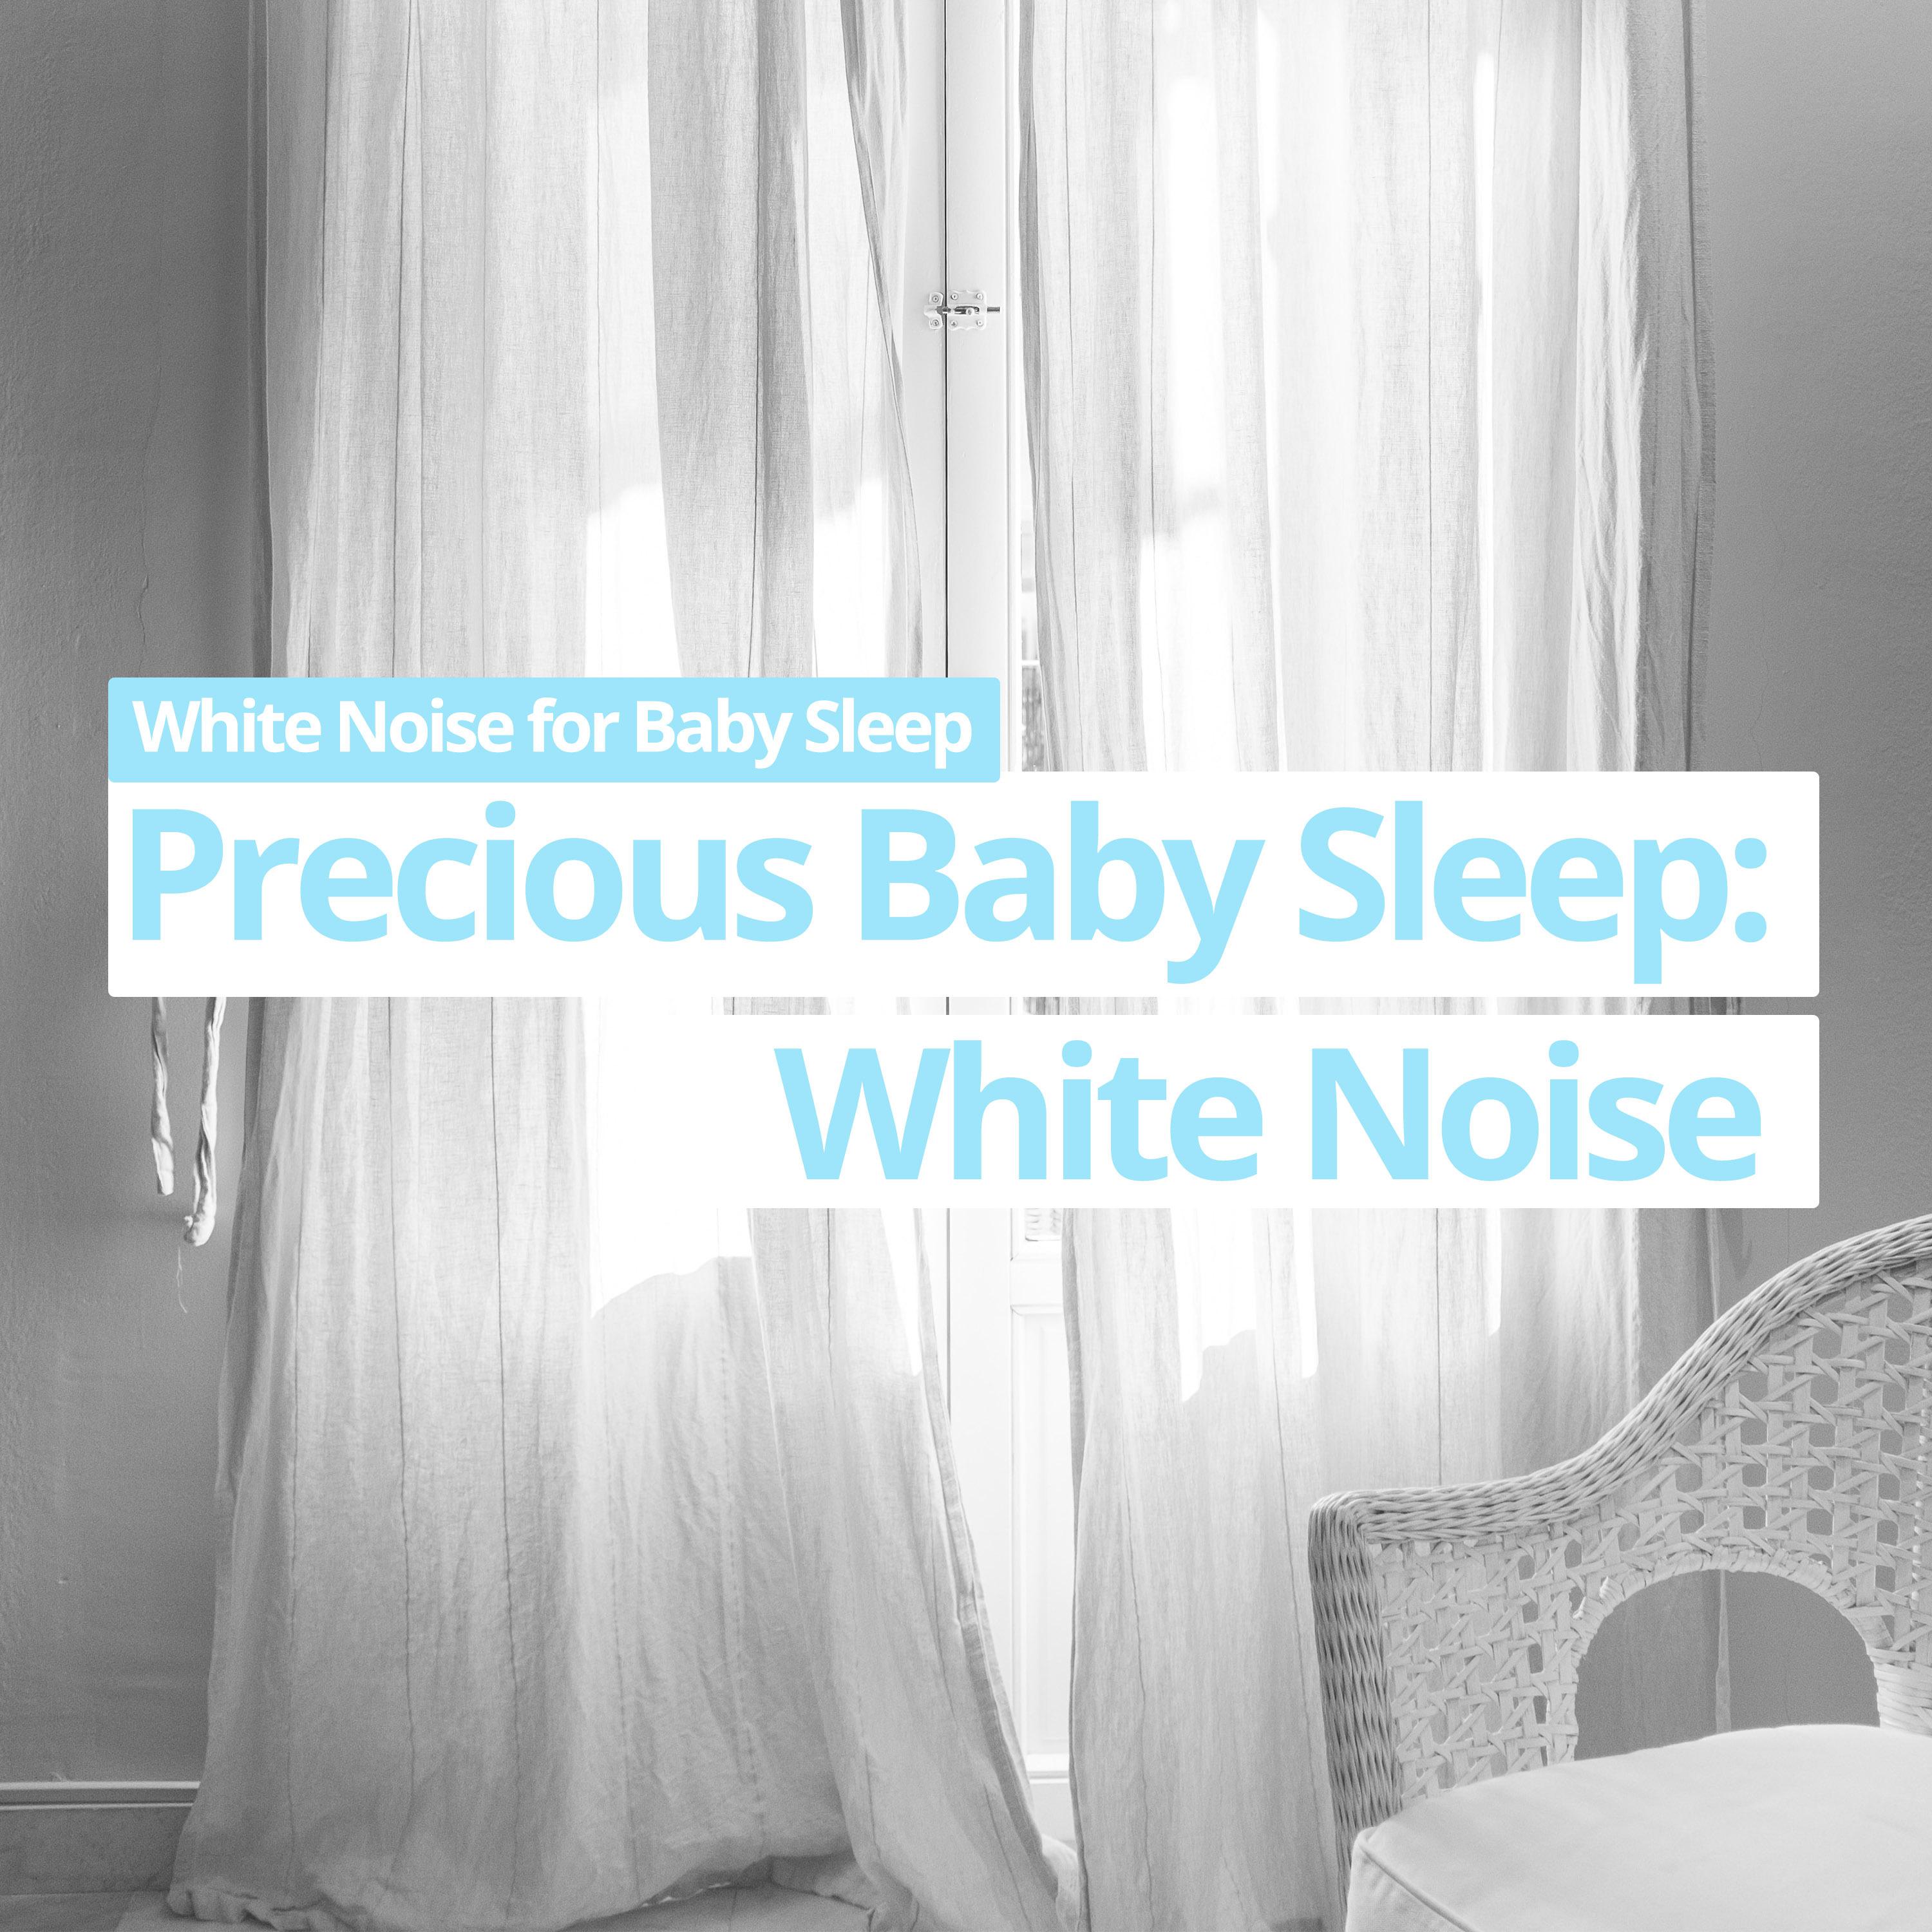 Precious Baby Sleep: White Noise